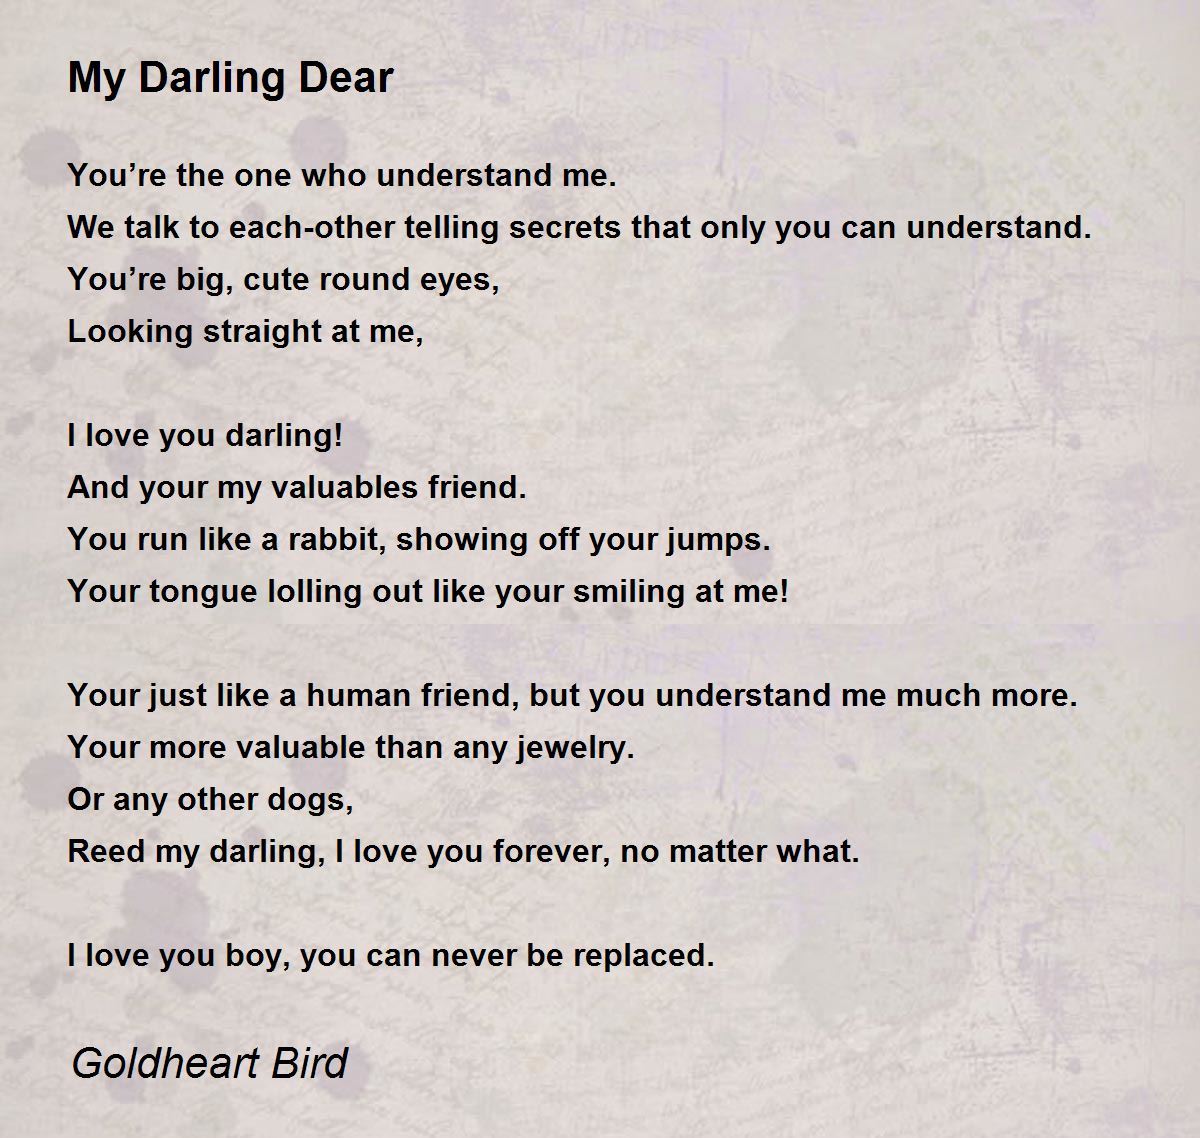 My Darling Dear - My Darling Dear Poem by Goldheart Bird